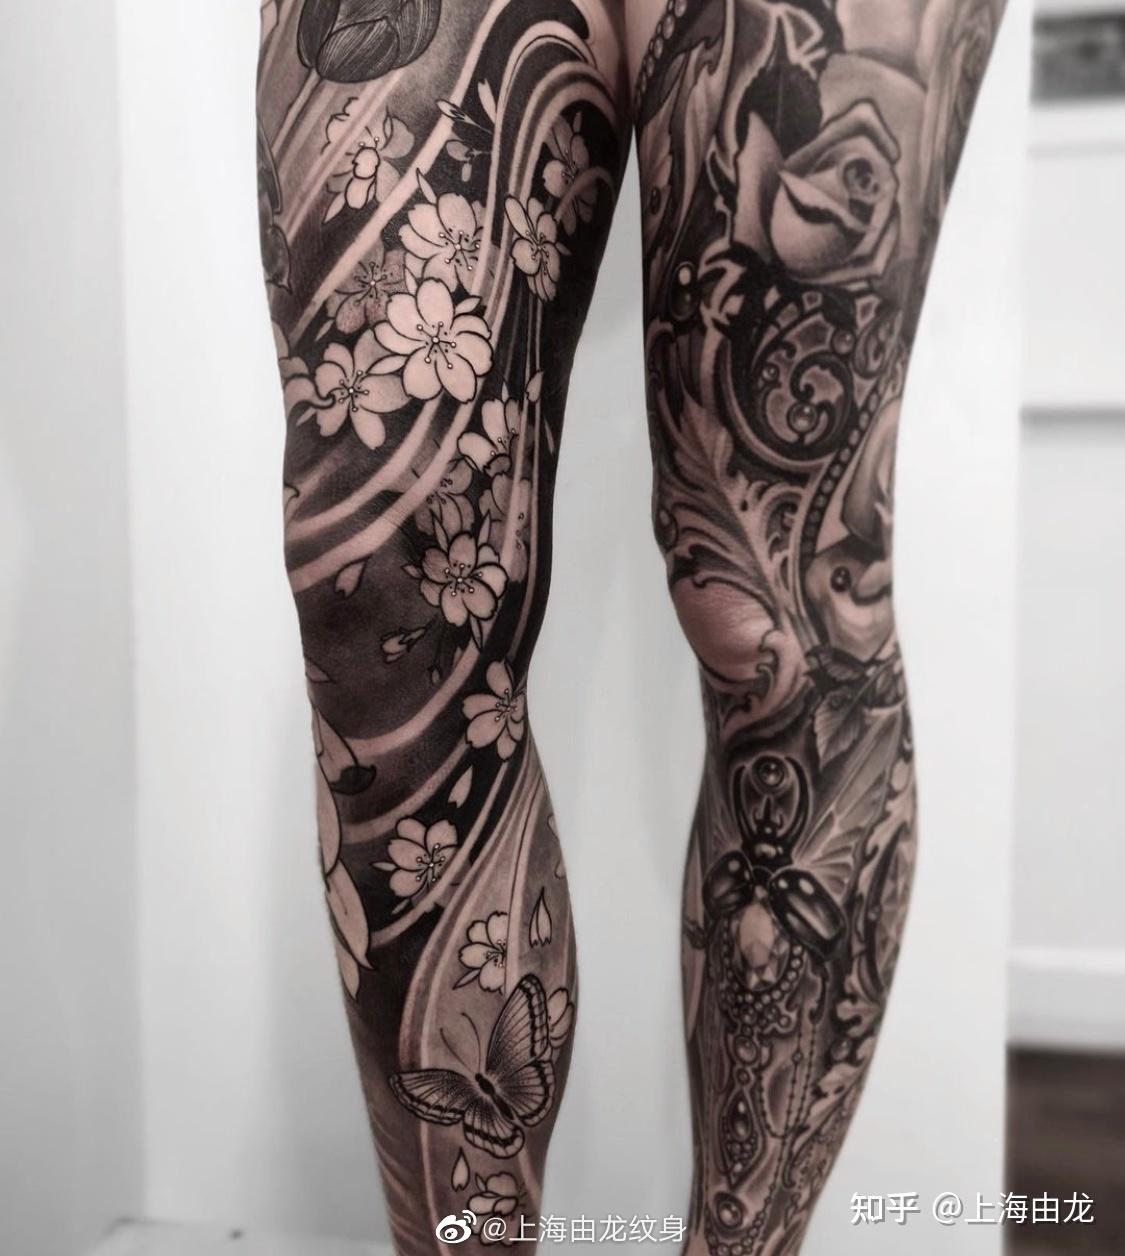 大腿性感欧美点刺花卉纹身图案-纹身图片网